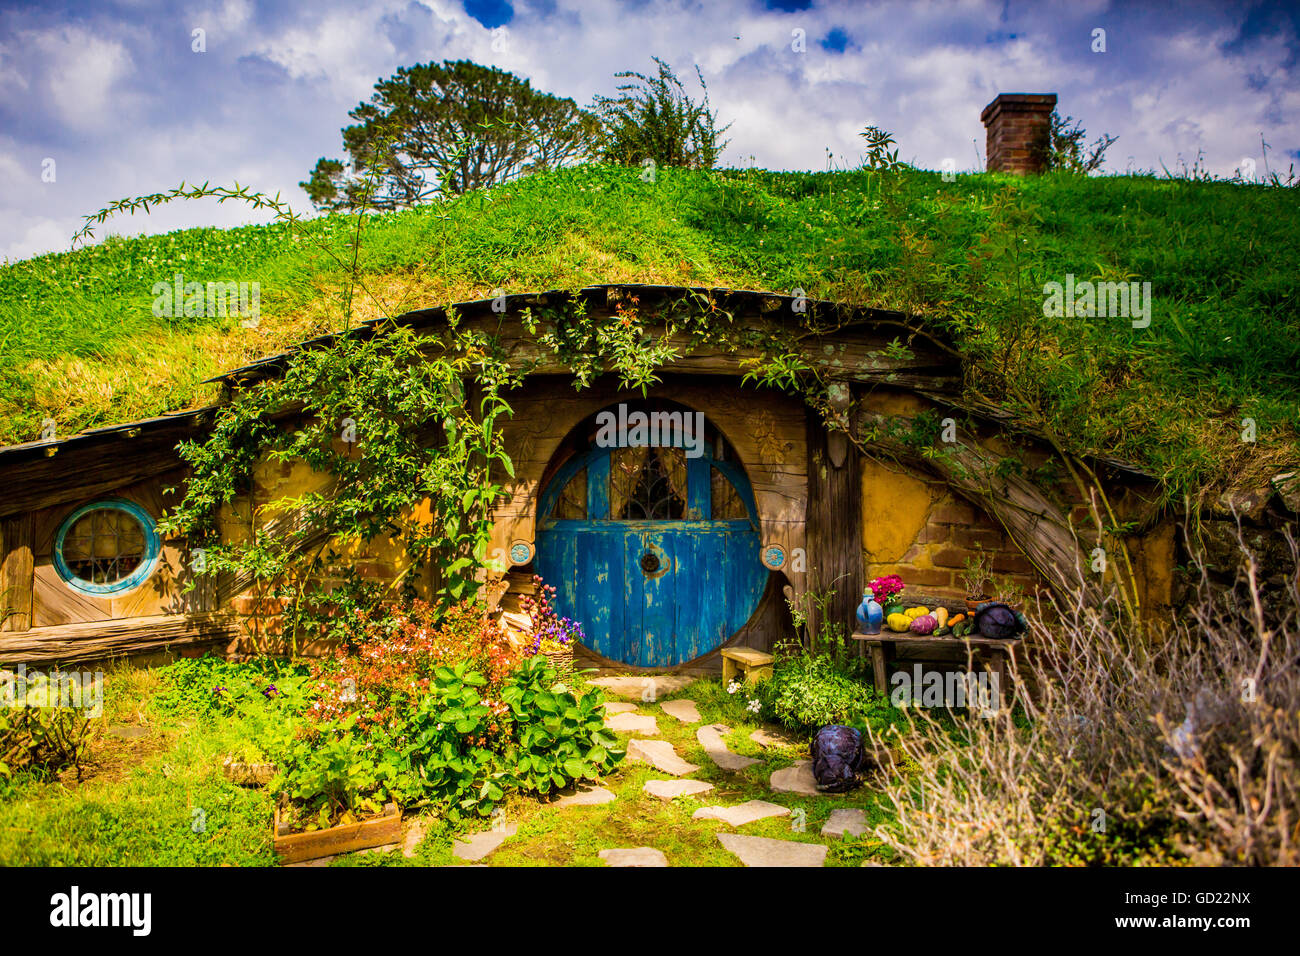 La porta anteriore di un hobbit House, Hobbiton, Isola del nord, Nuova Zelanda, Pacific Foto Stock